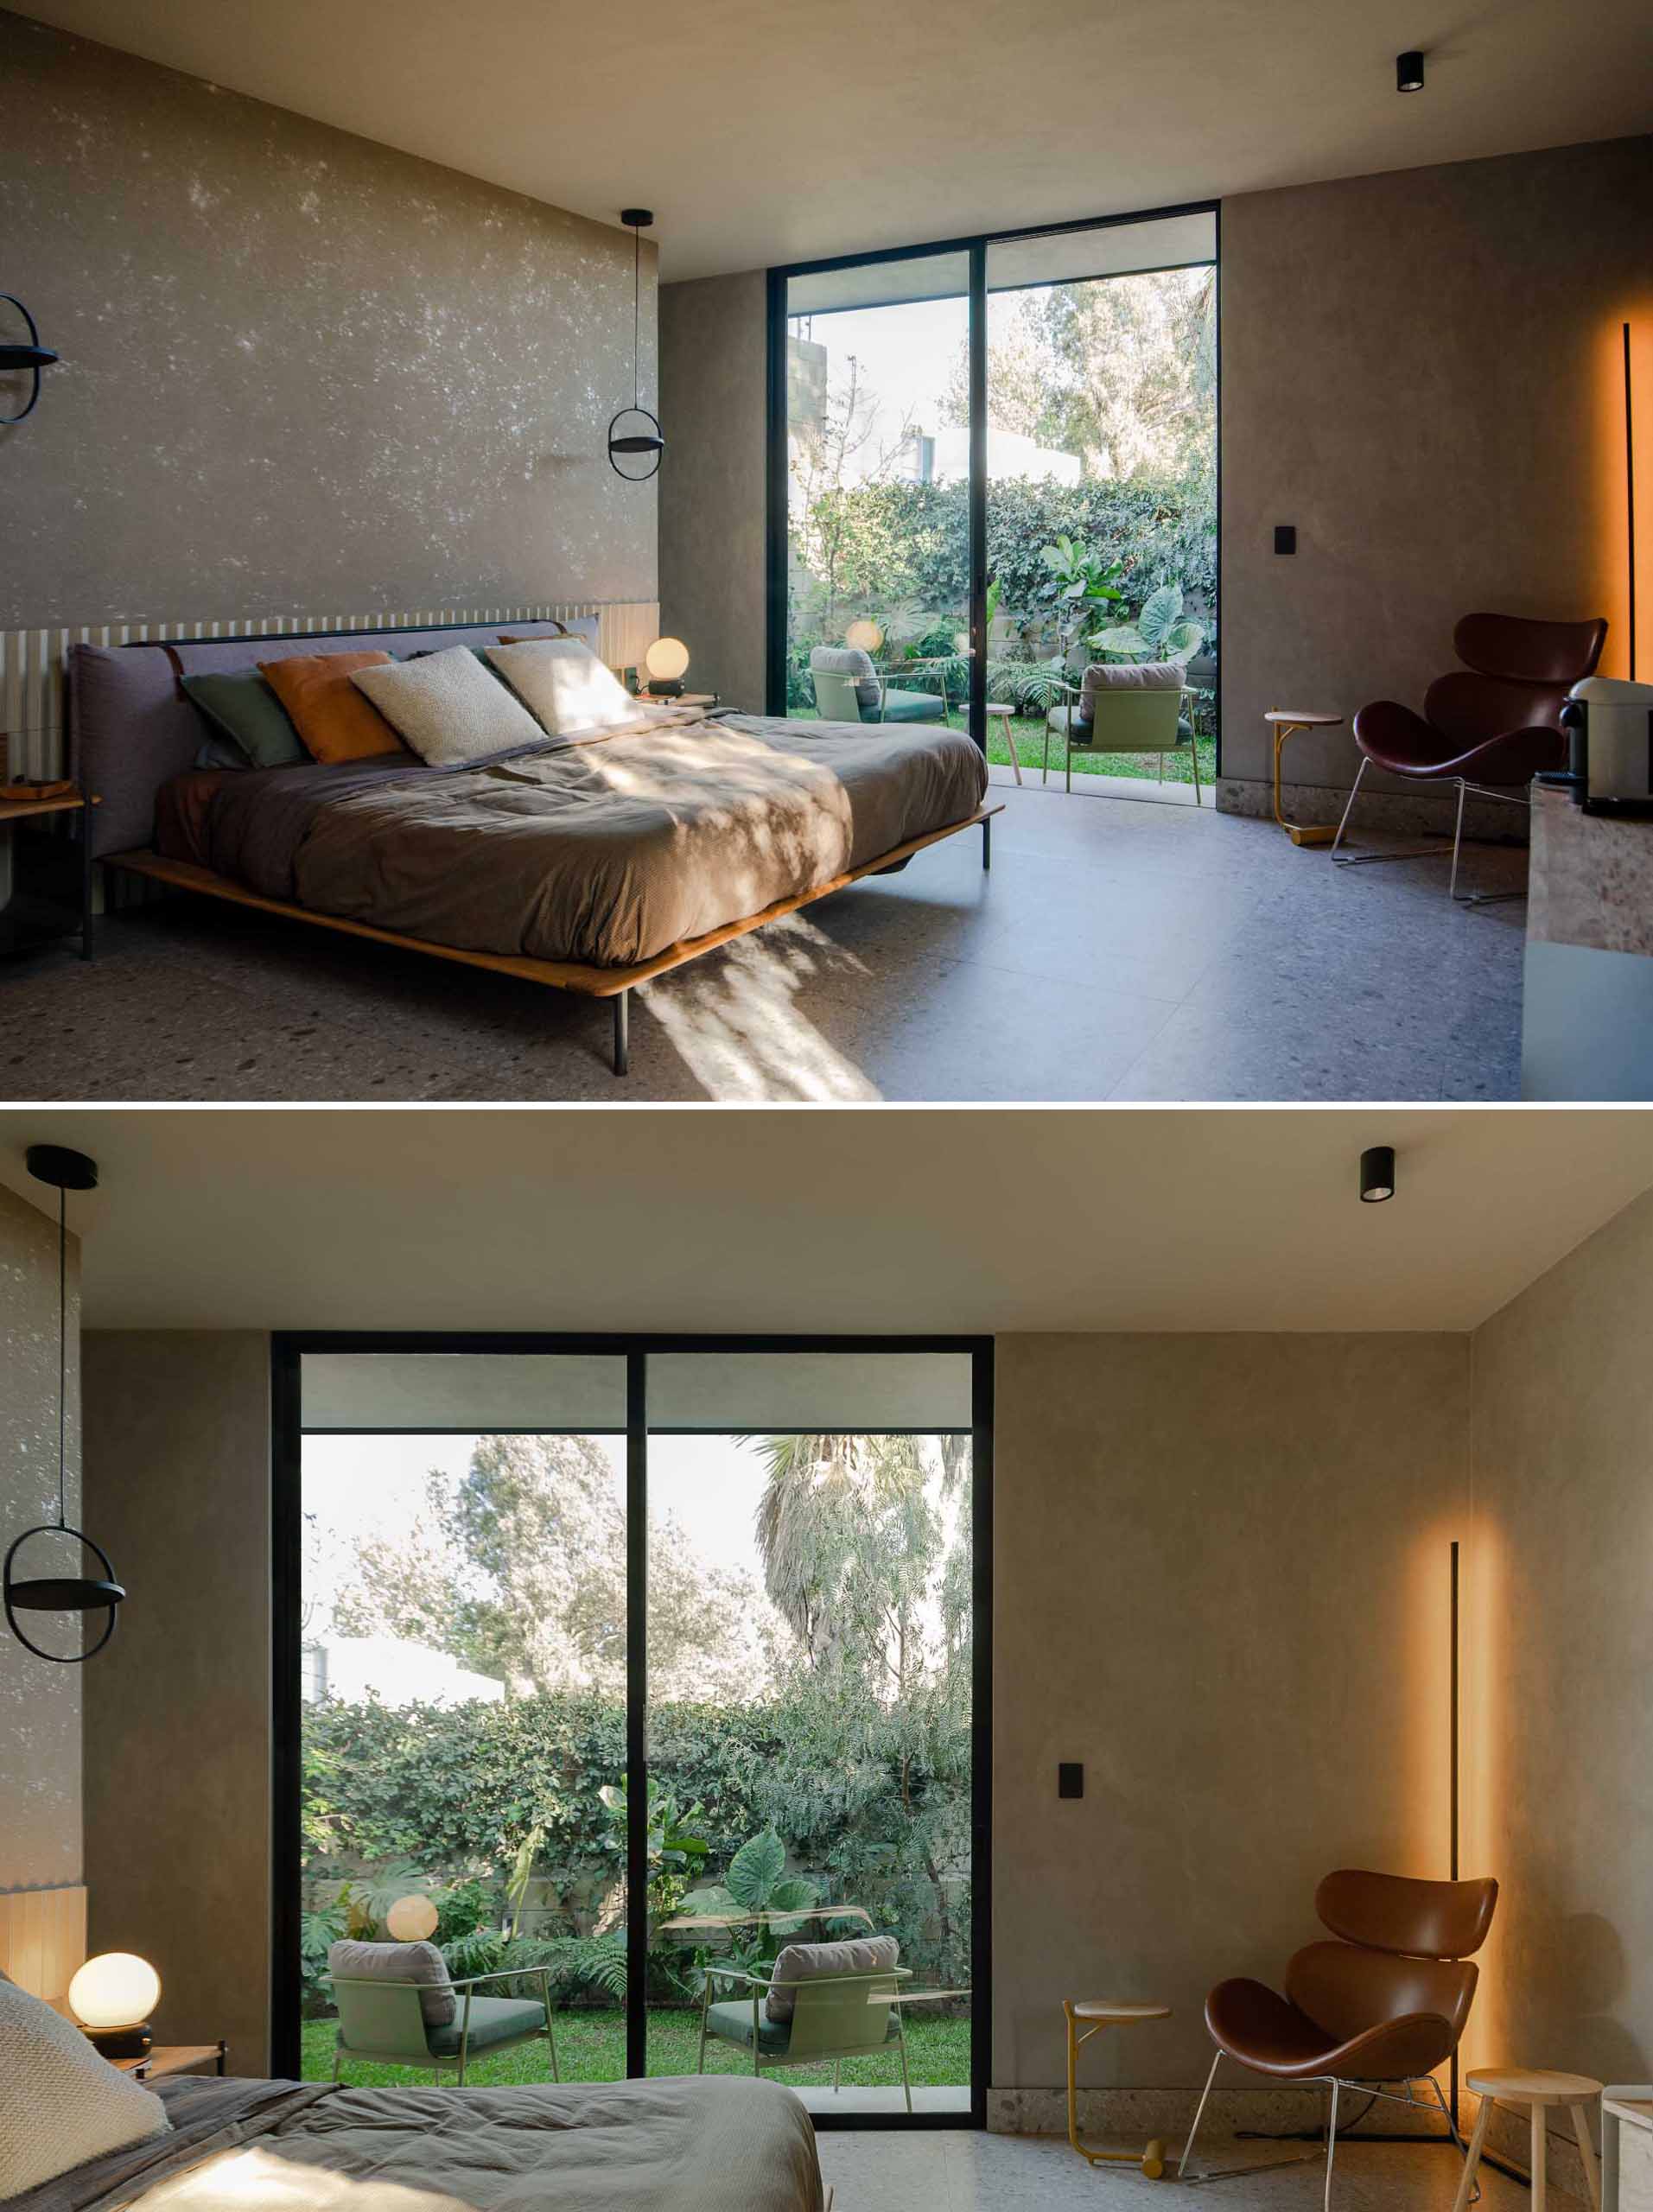 در این اتاق خواب اصلی، پالت طبیعی فضایی آرامش بخش و آرام بخش ایجاد می کند، در حالی که یک در شیشه ای کشویی به یک پاسیو کوچک با منظره باغ باز می شود.